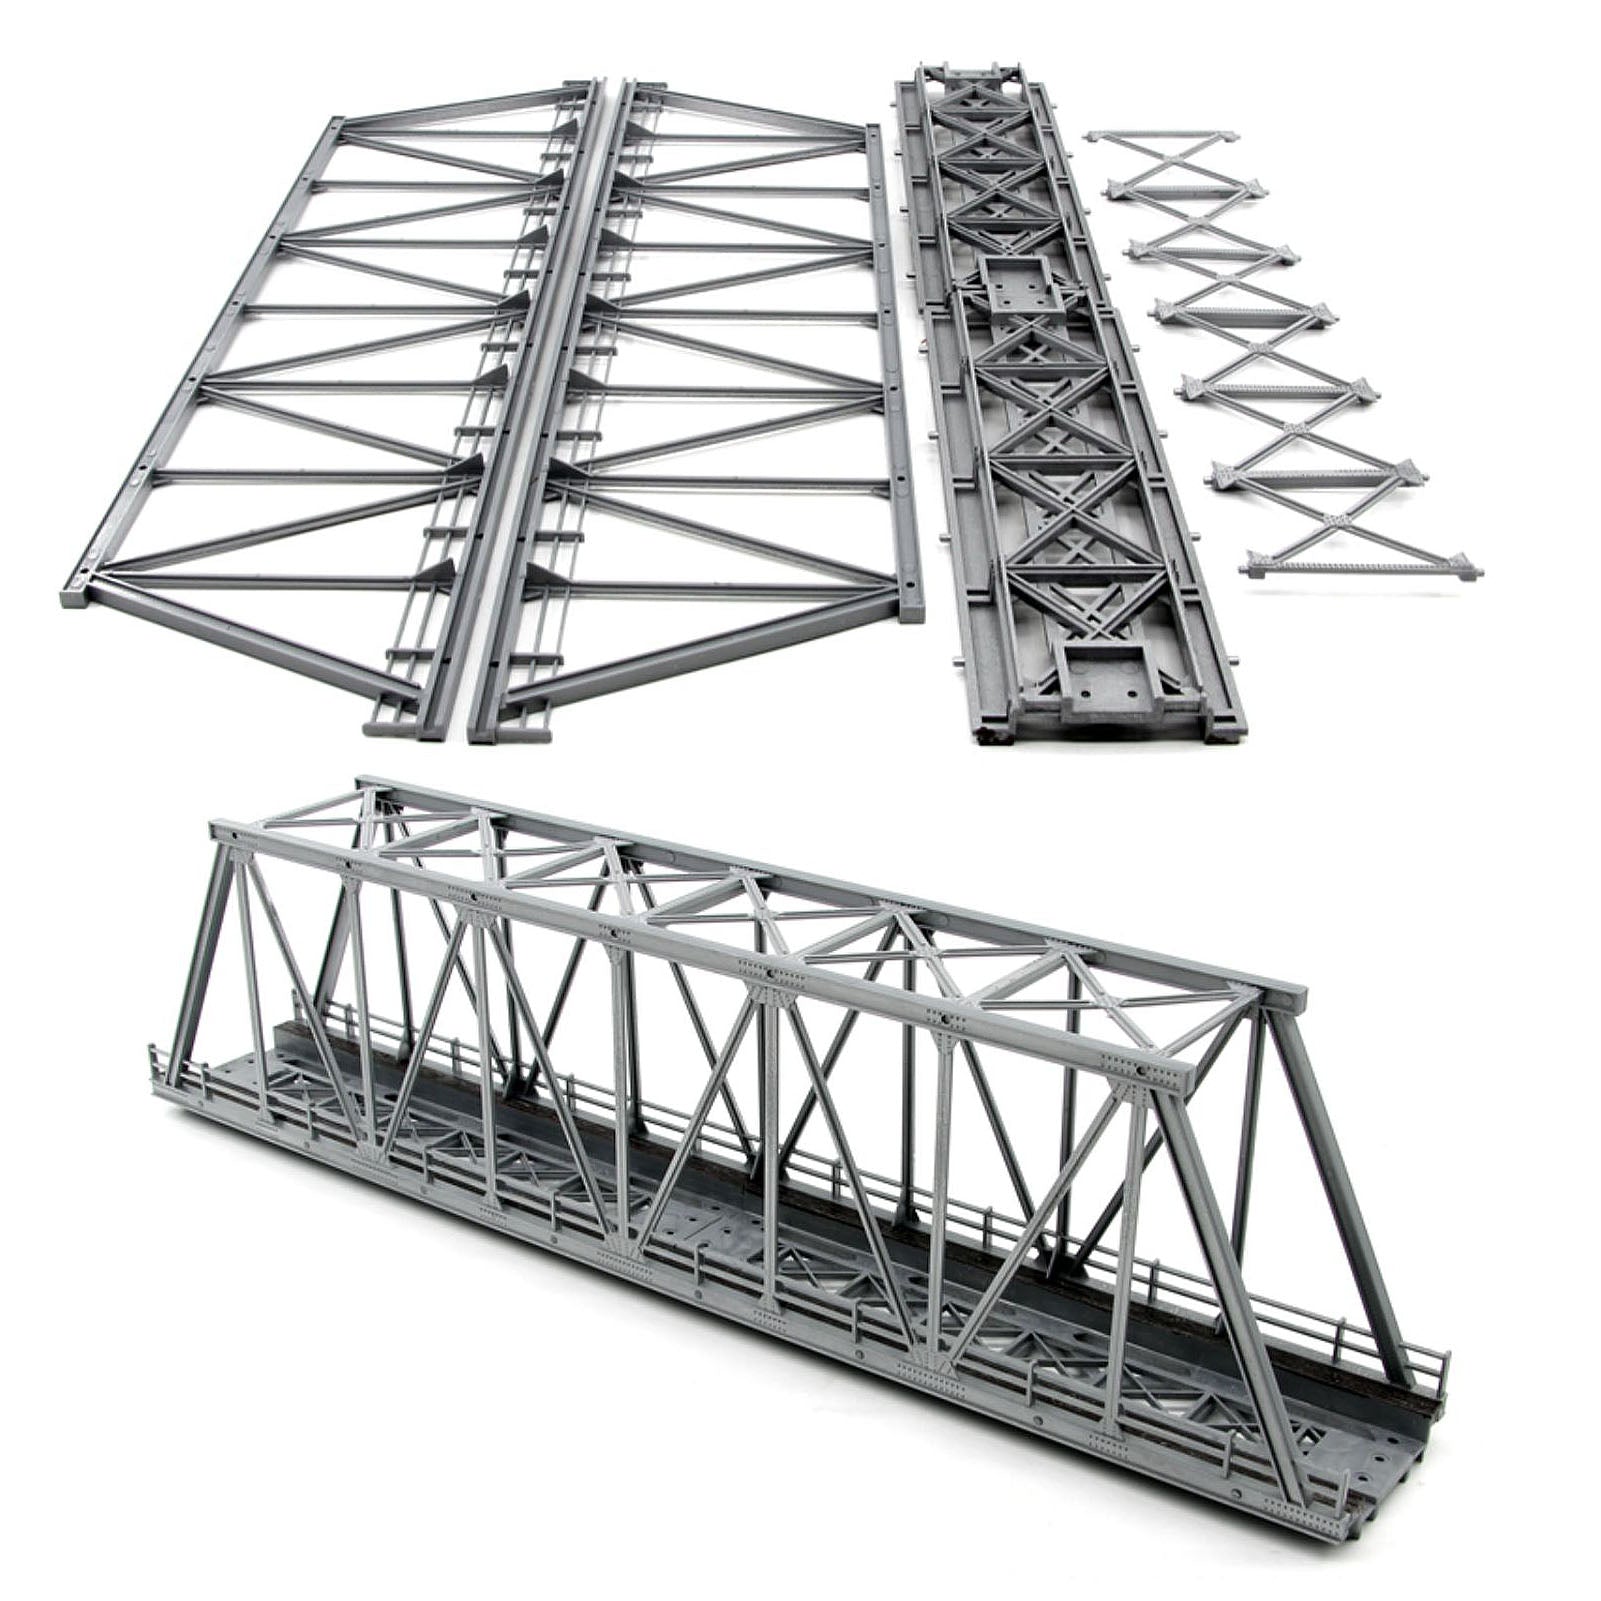 QL009 HO Scale 1:87 Model Truss Bridge Kit for Model Track Model Trains